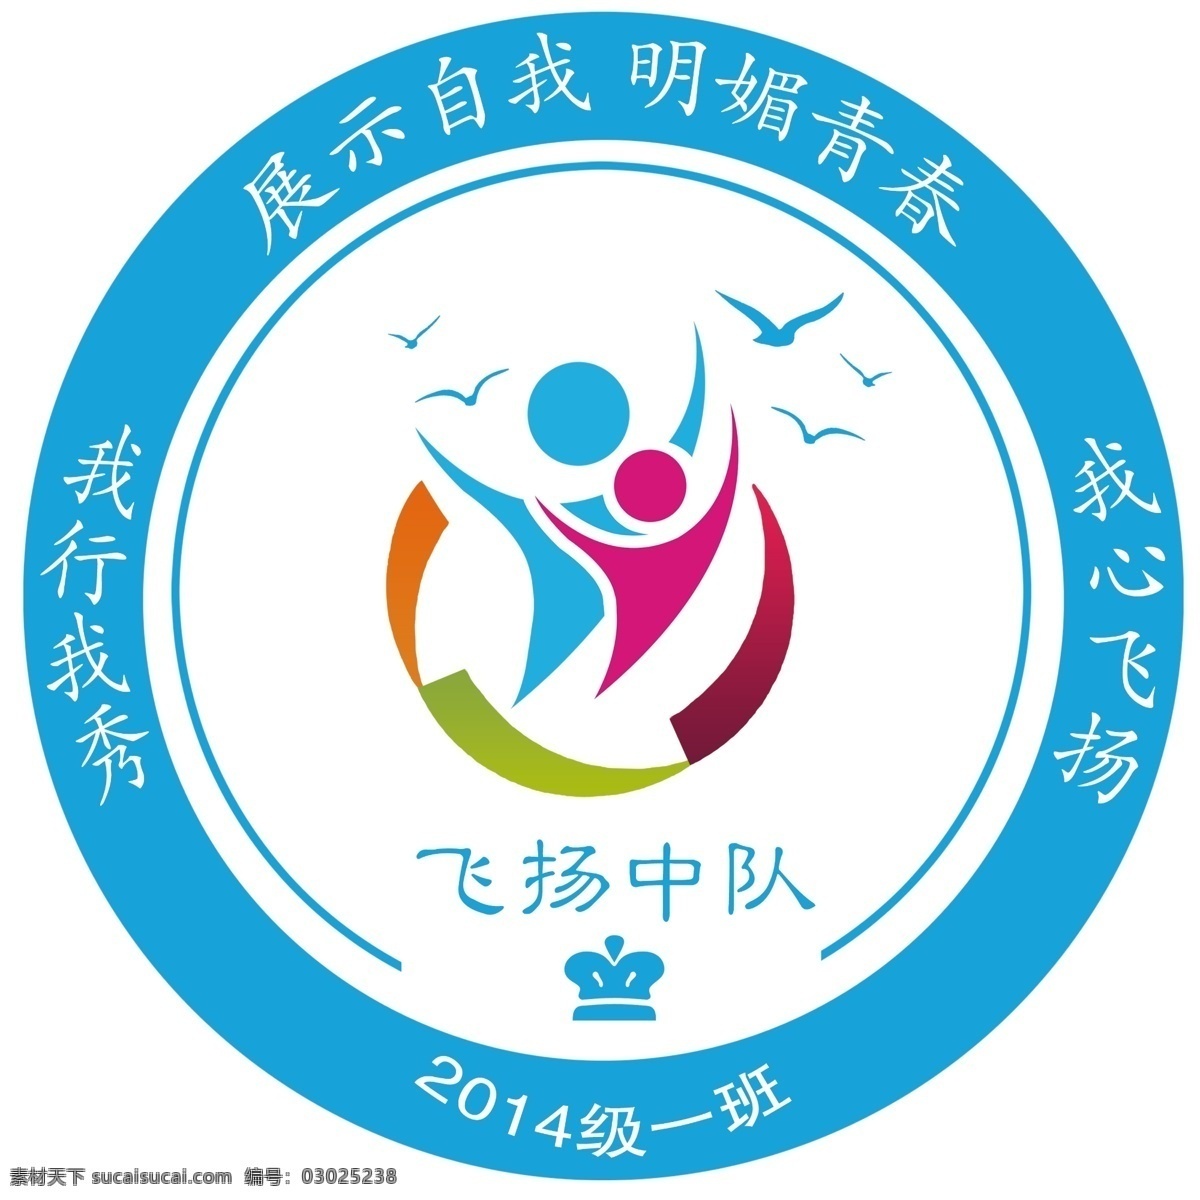 学校logo 班徽 飞扬中队 海鸥 蓝色 logo设计